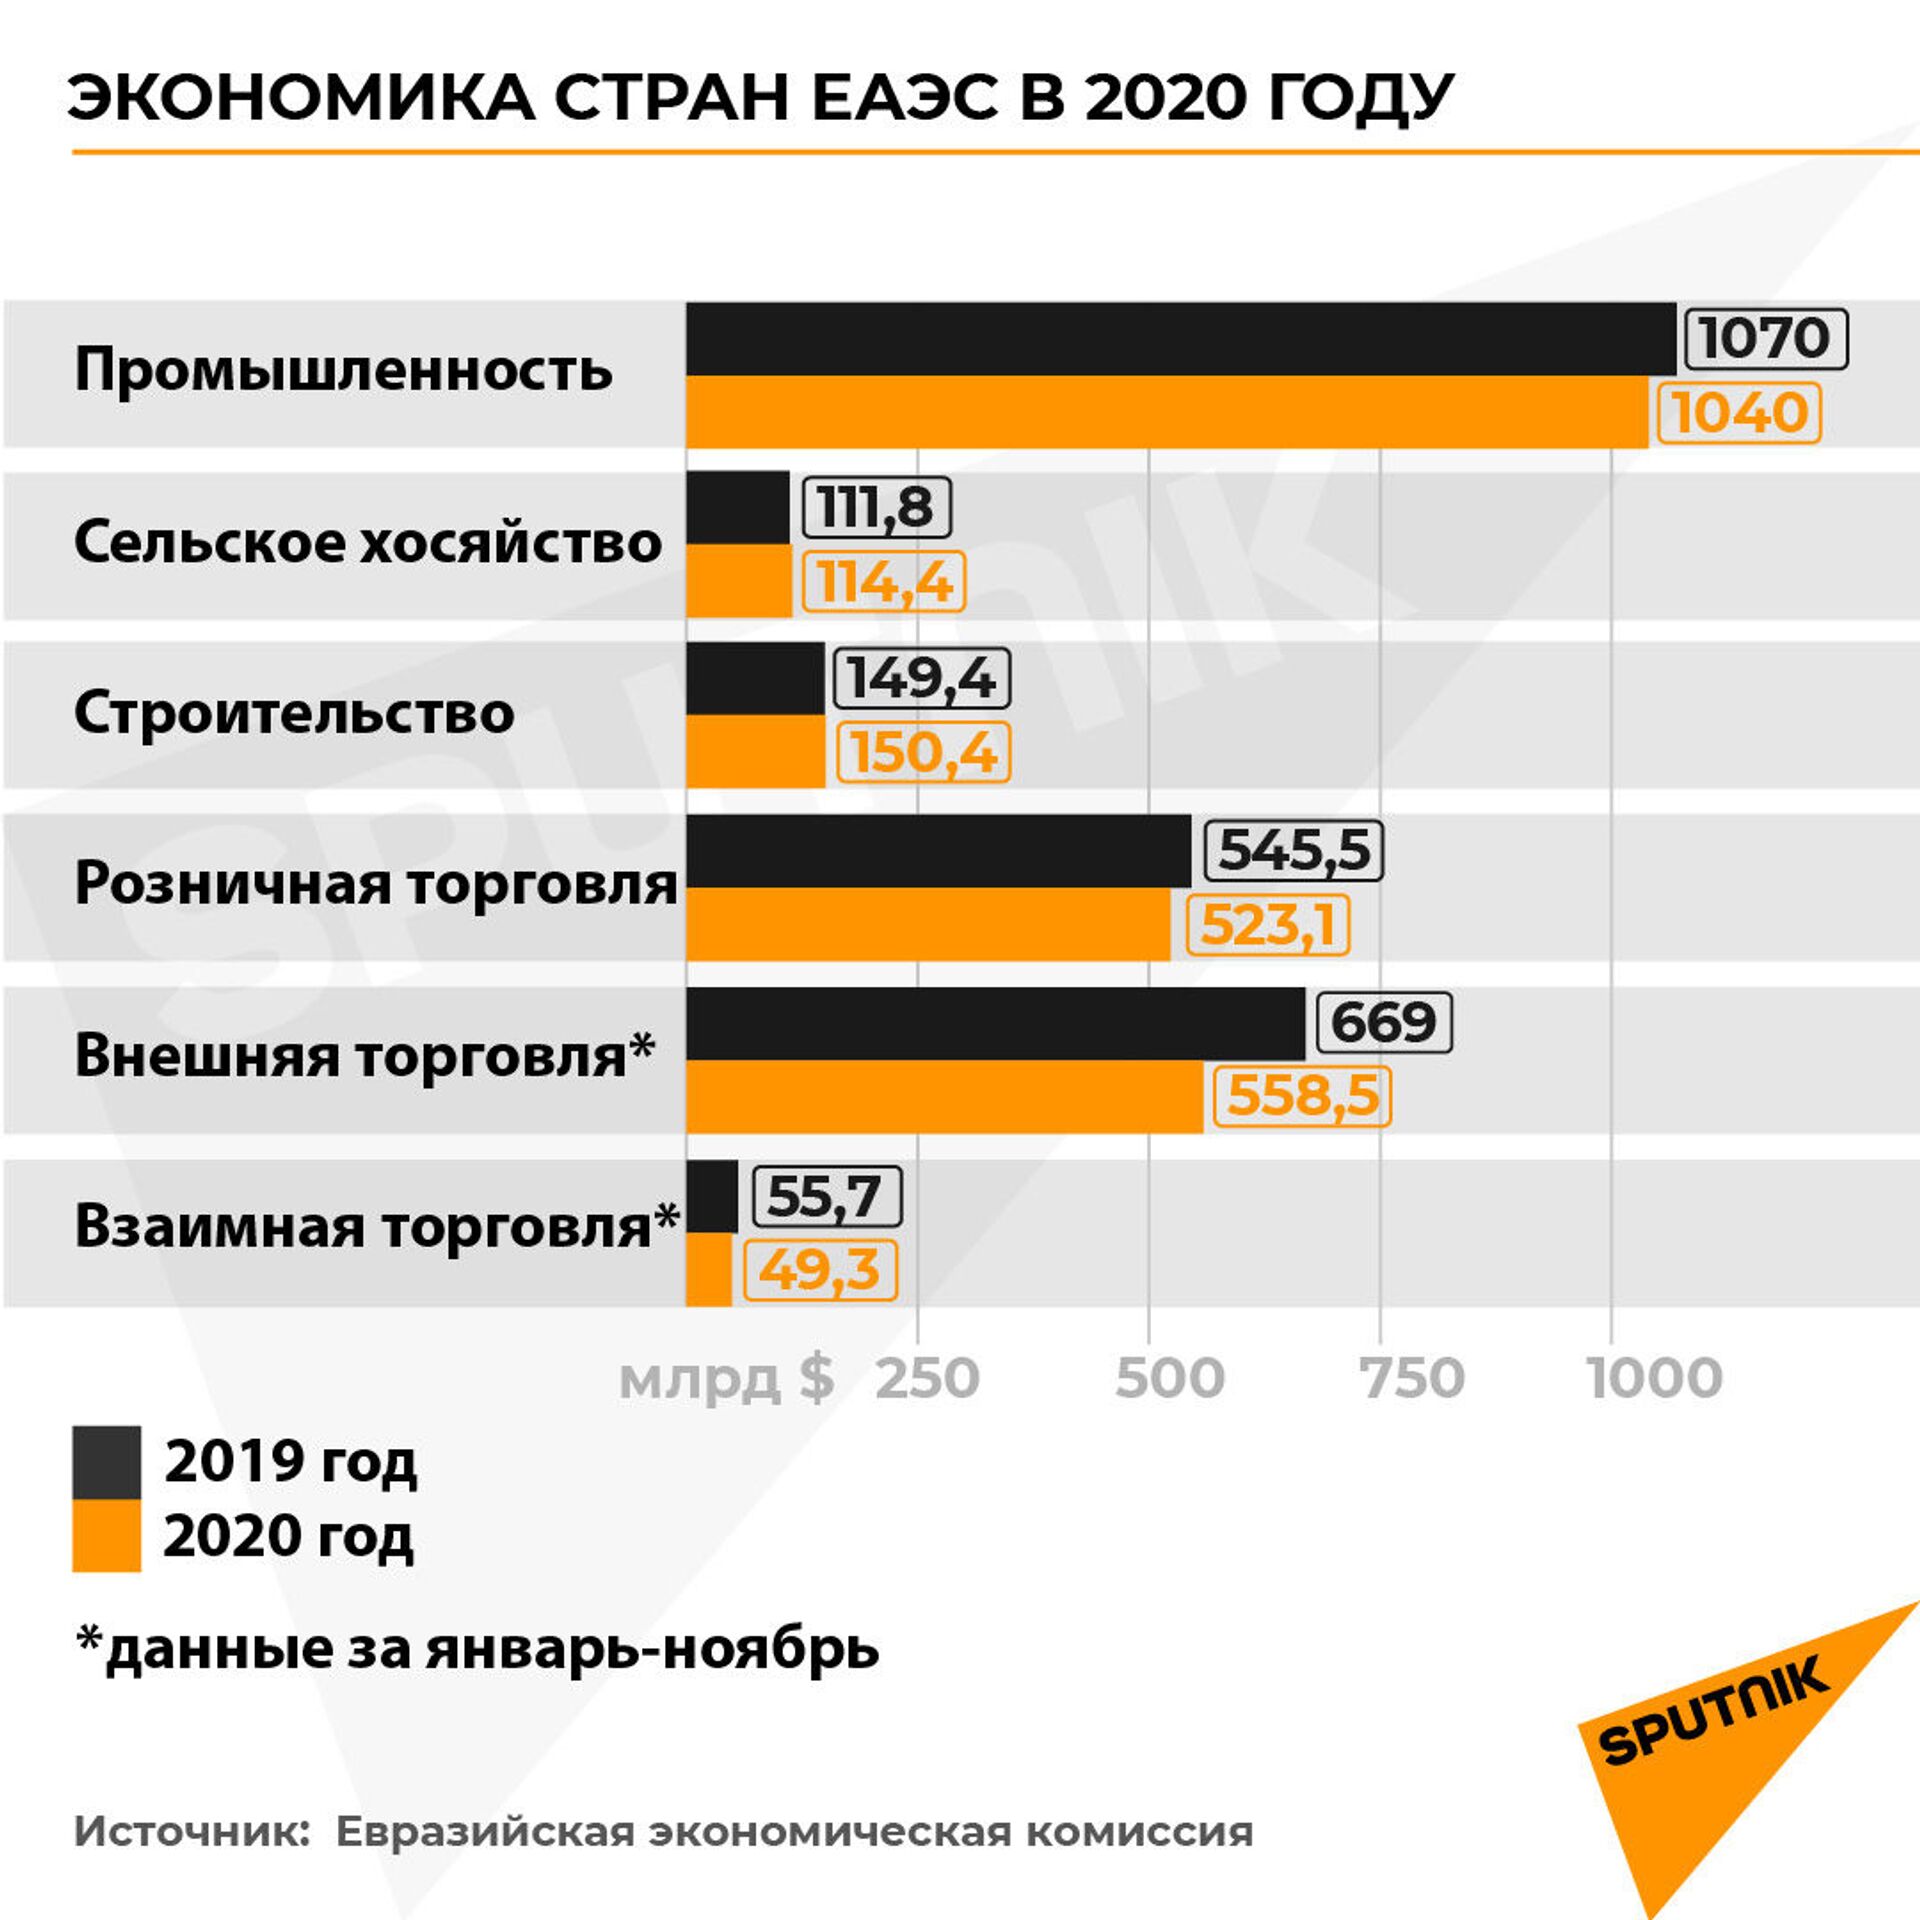 Цифровизация и общий план: что нужно ЕАЭС для роста экономики? - Sputnik Беларусь, 1920, 19.02.2021